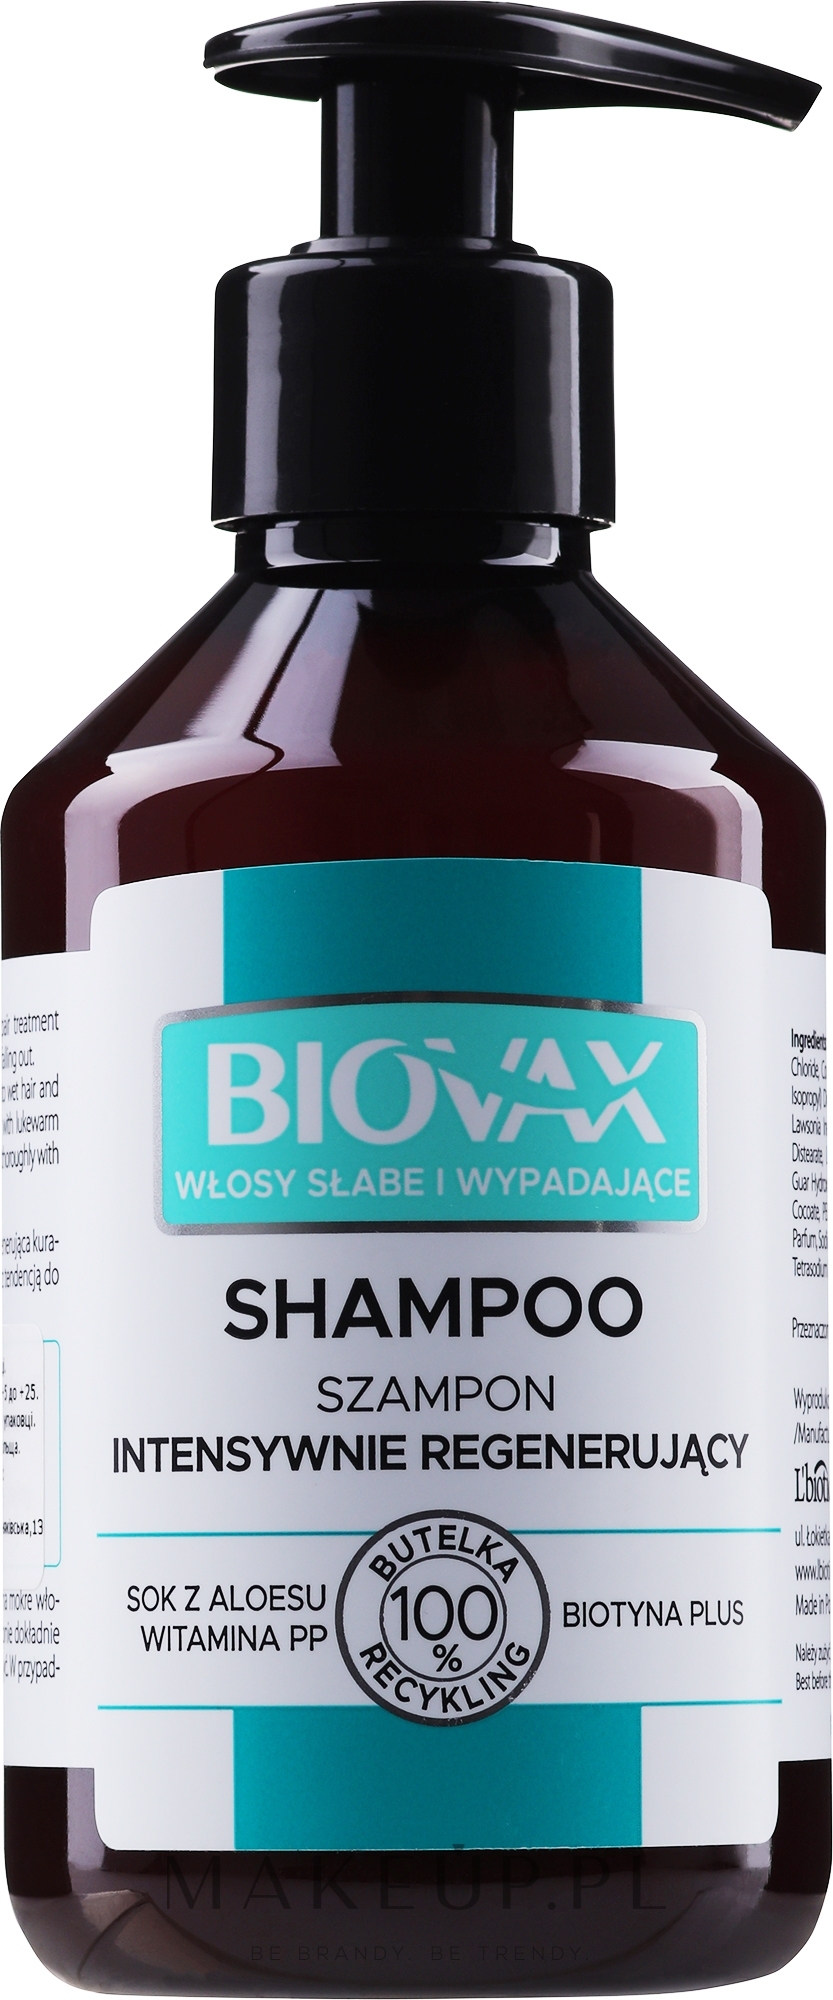 biovax najlepszy szampon opinie